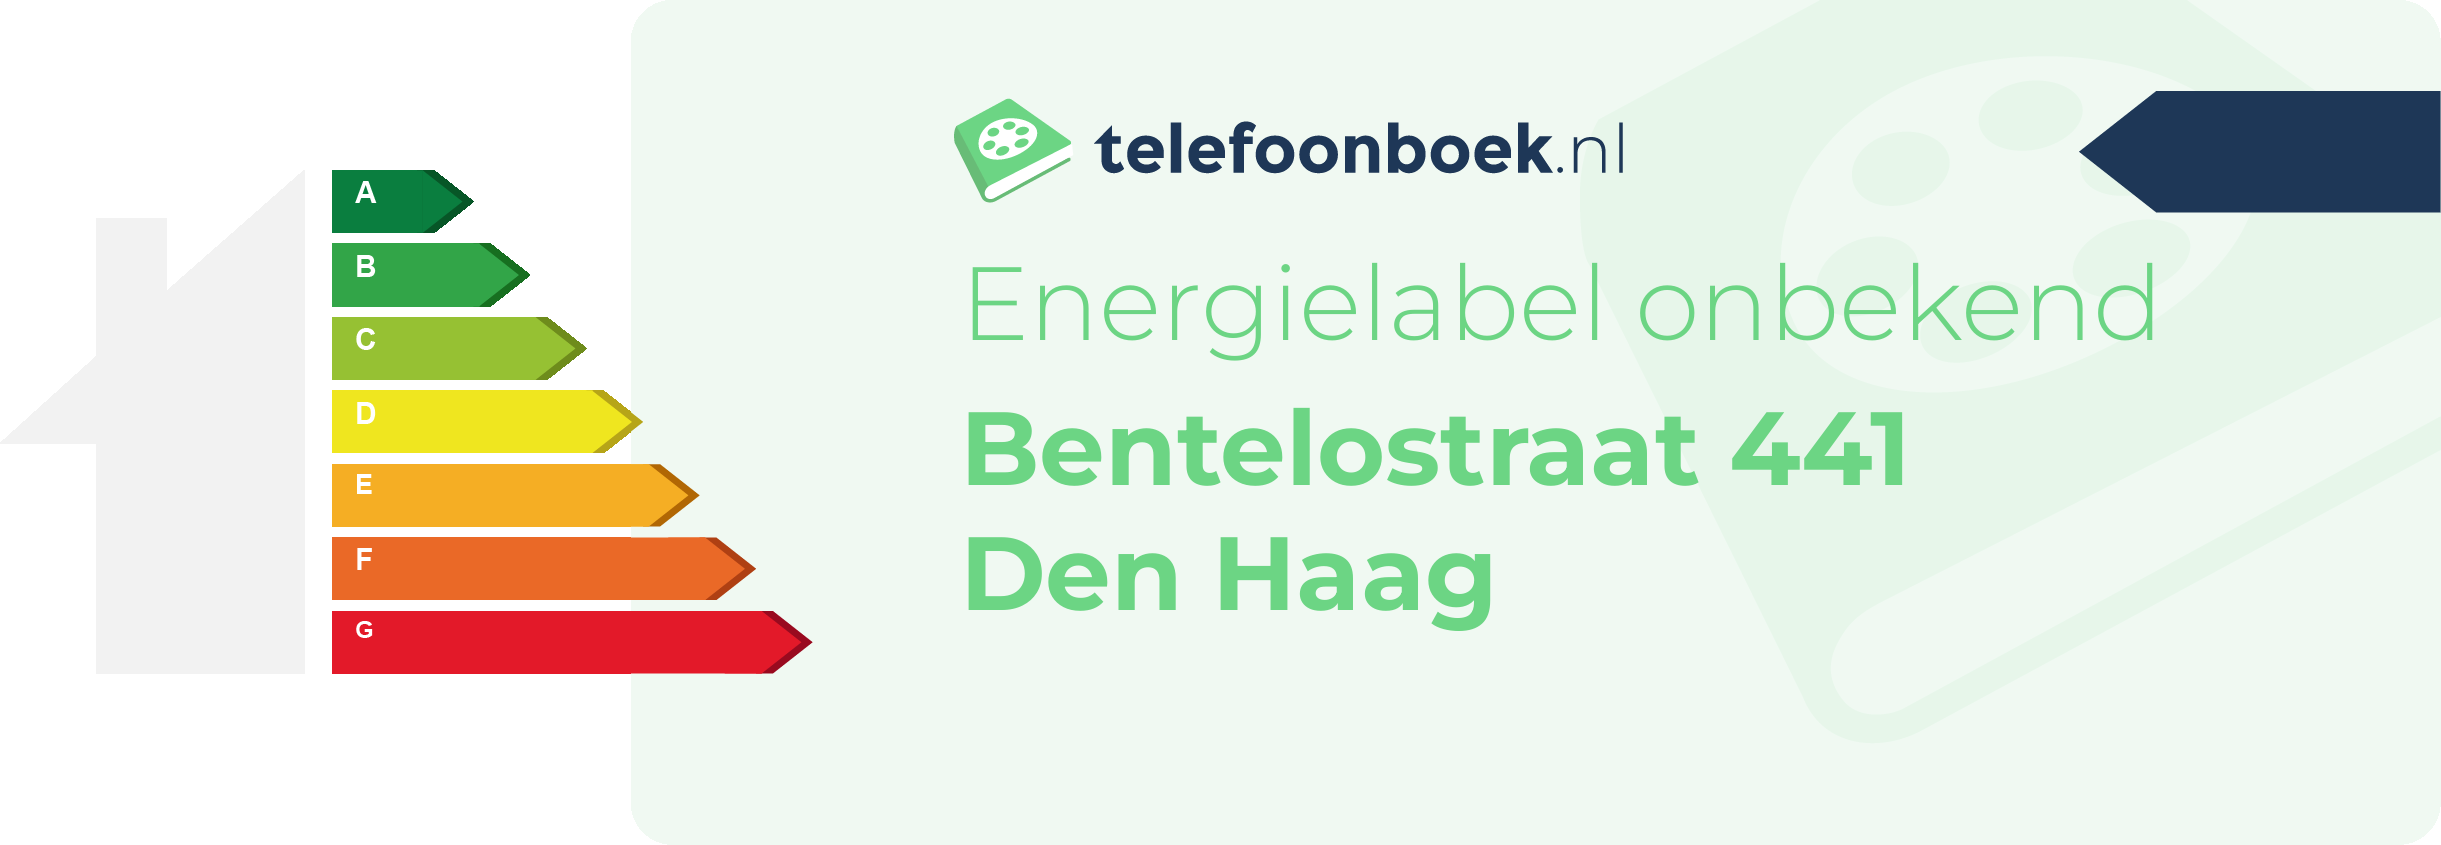 Energielabel Bentelostraat 441 Den Haag